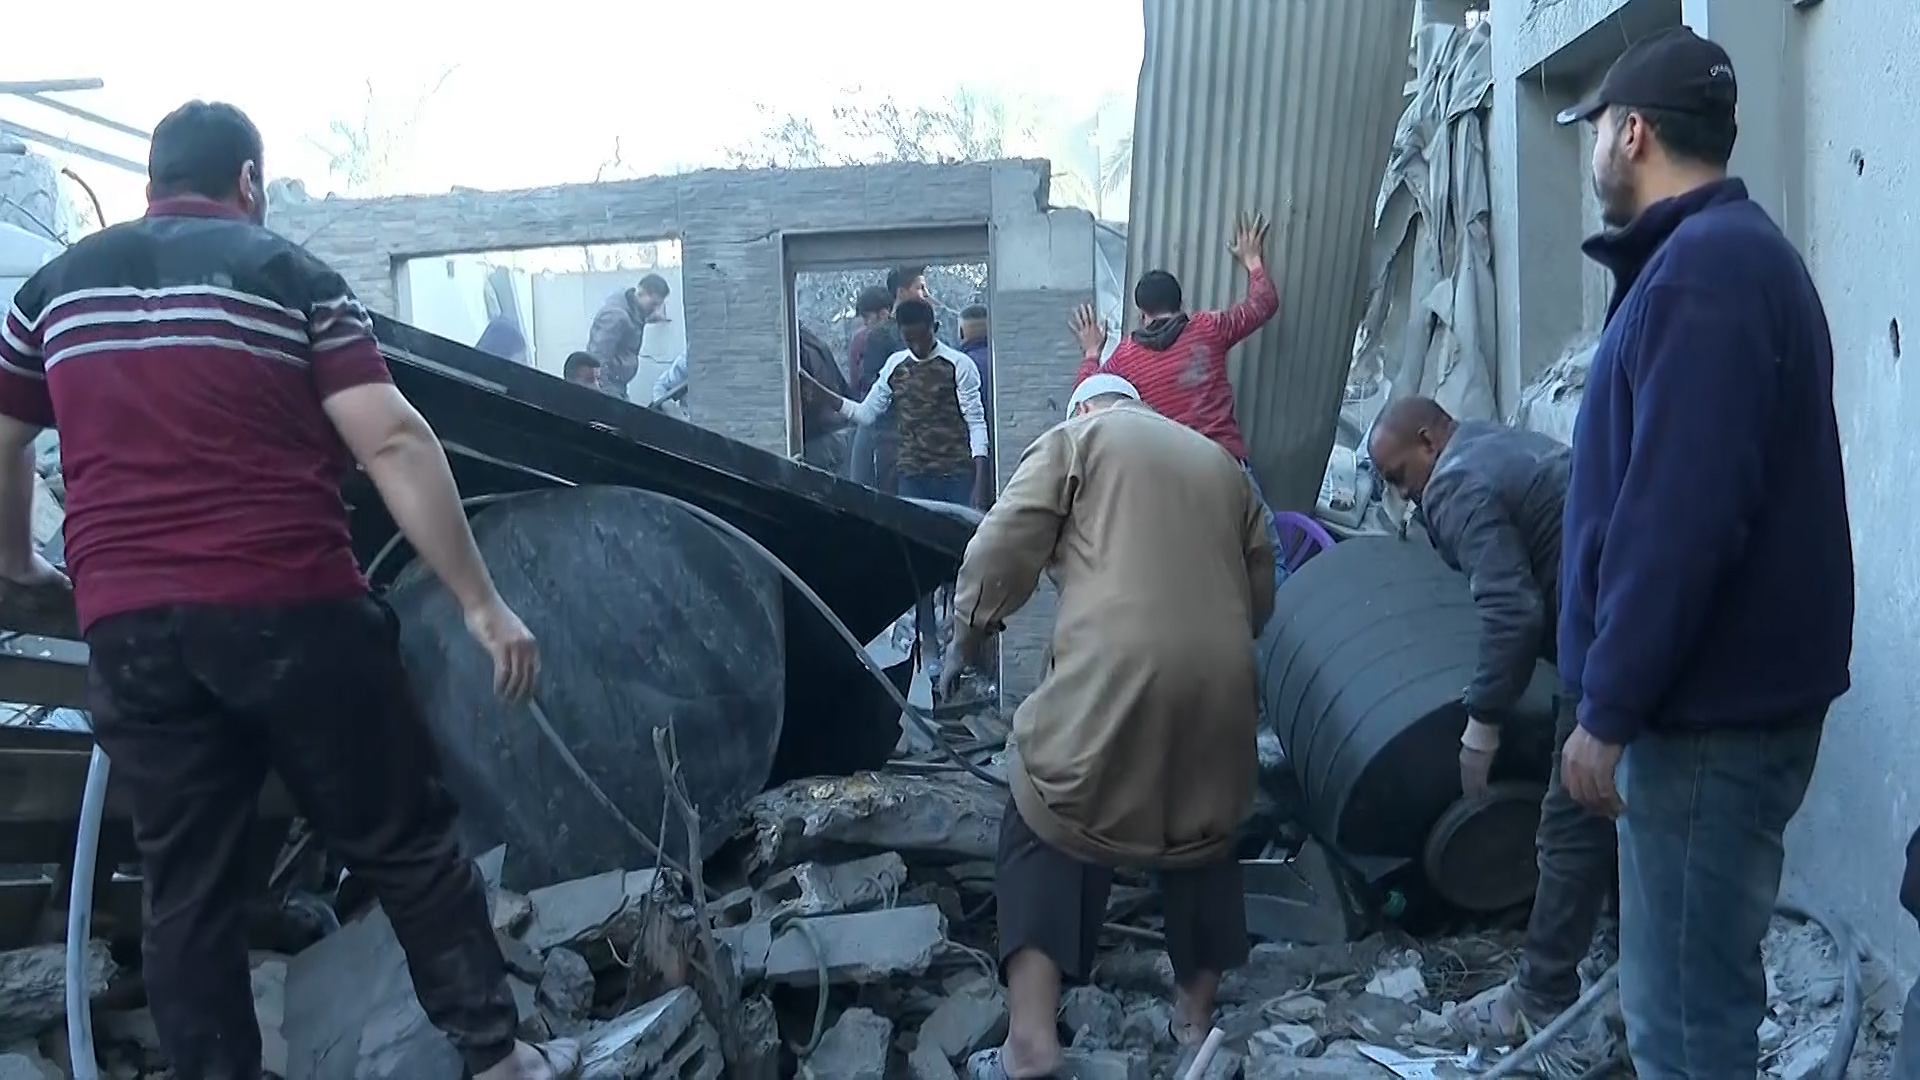 البوكس نيوز ترصد استخراج مصابين من منزل قصف في دير البلح بغزة | البرامج – البوكس نيوز